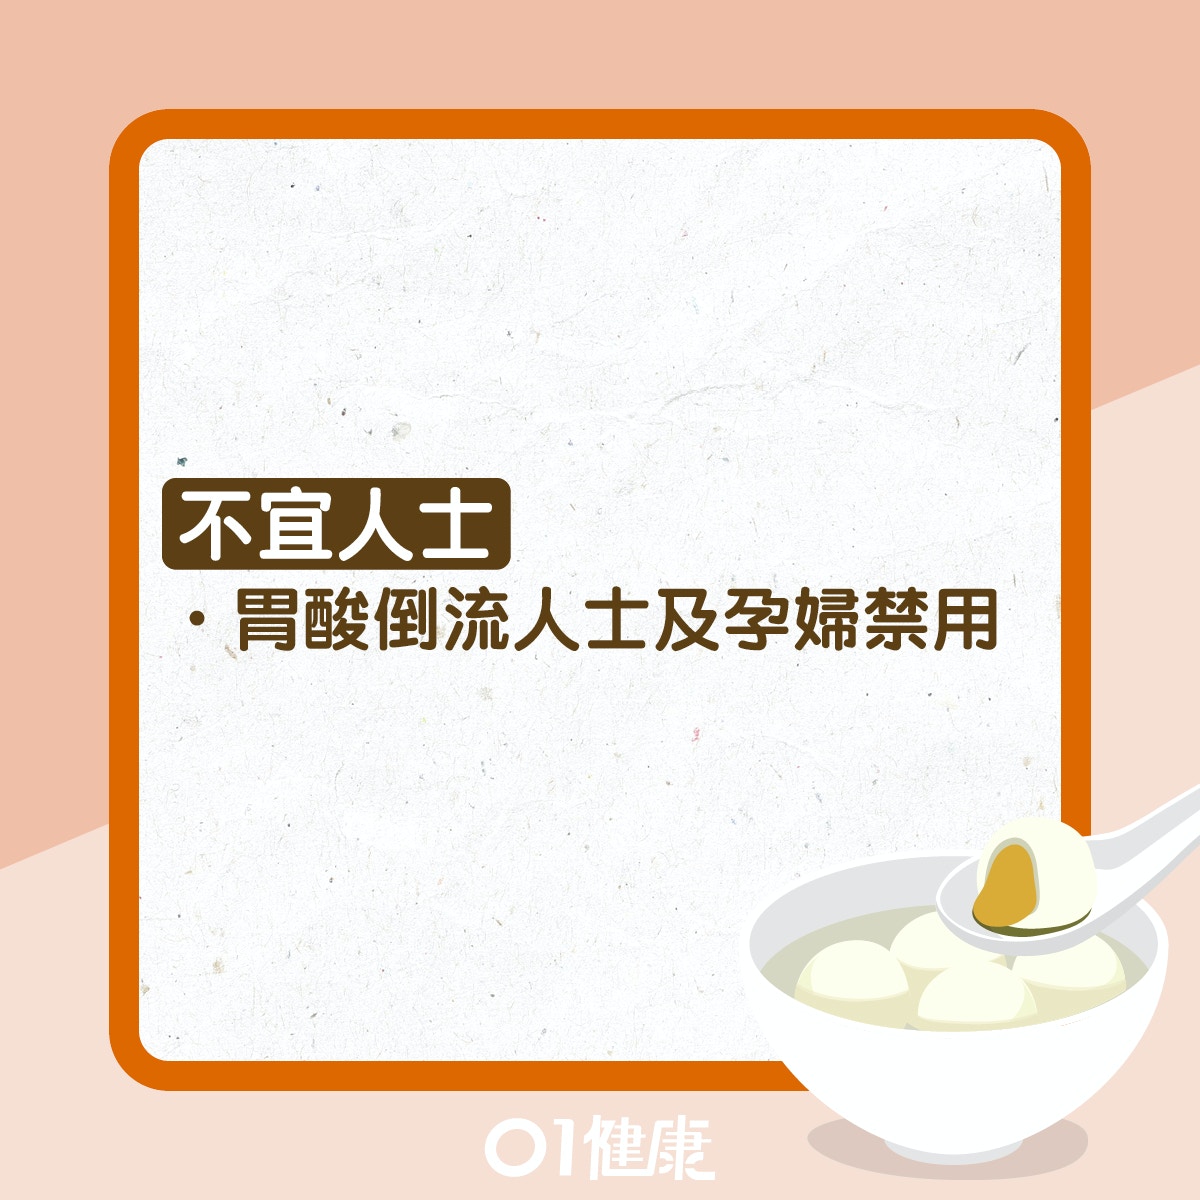 山楂麦芽茶（01制图）